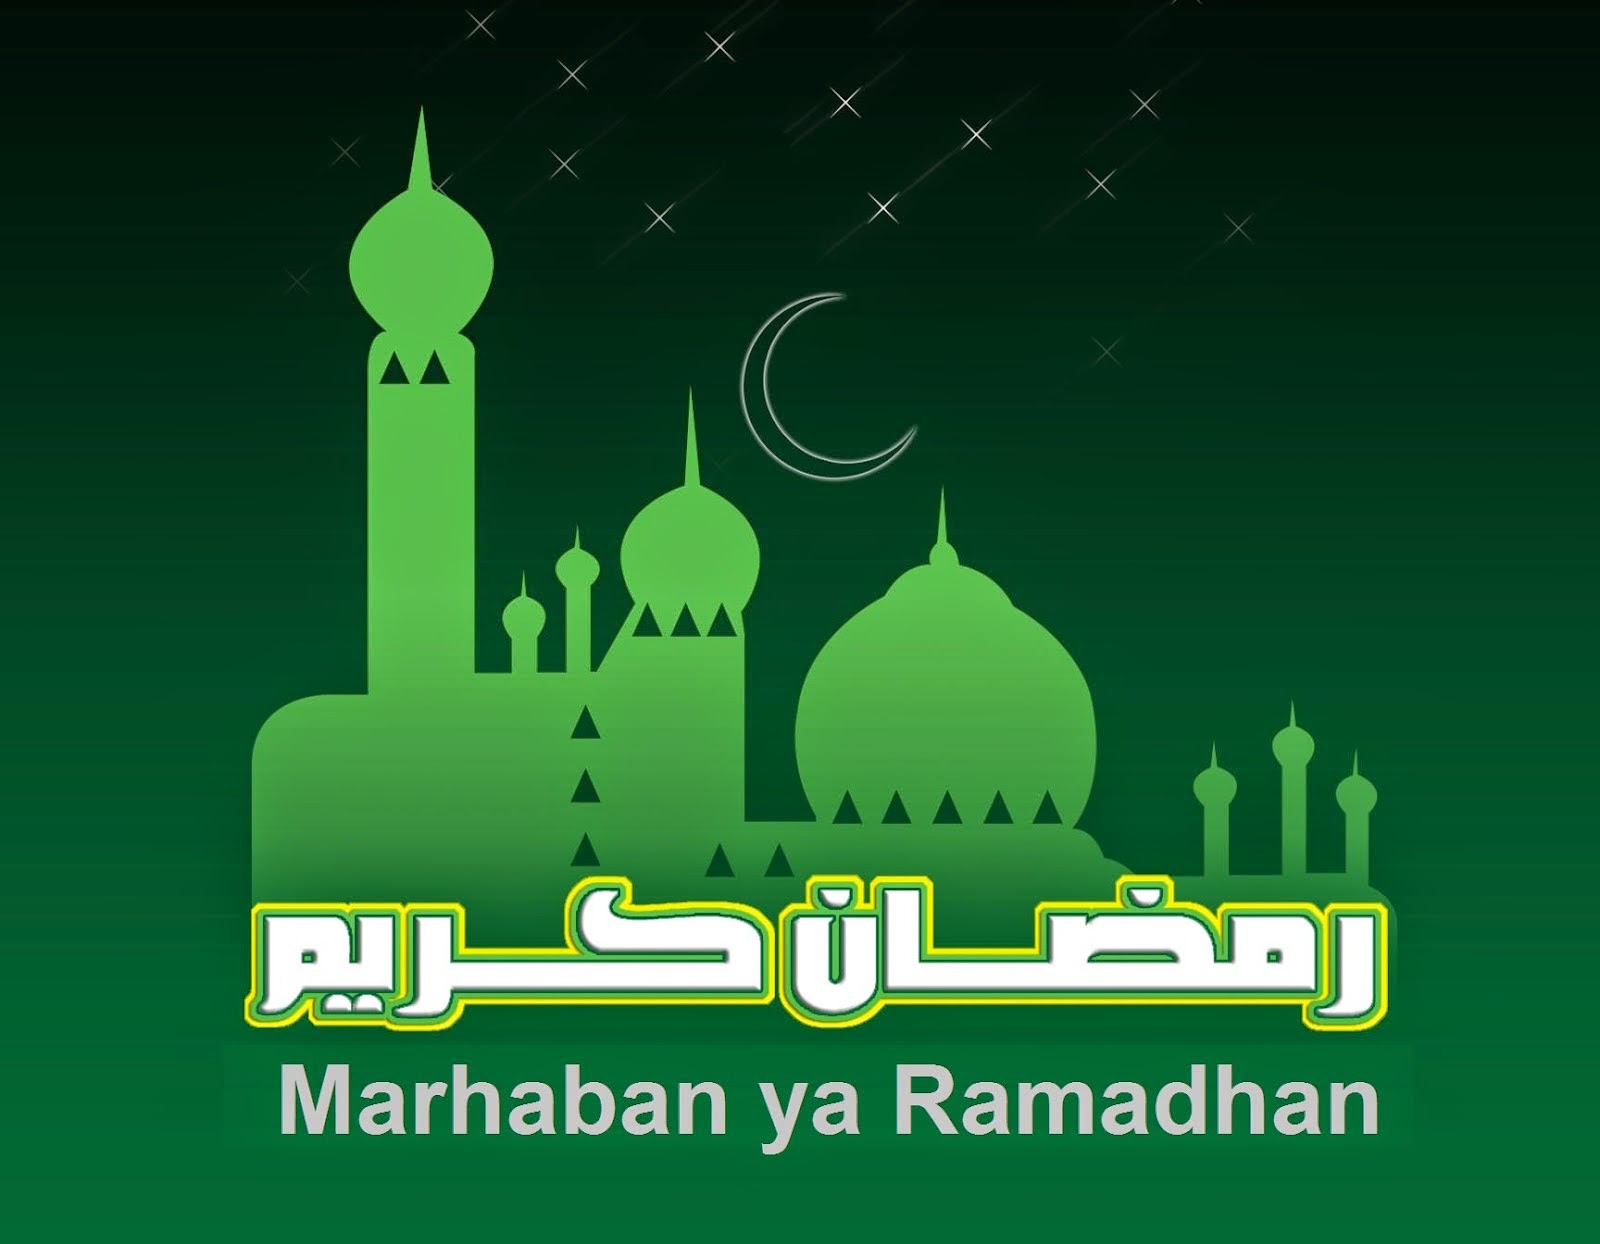 Gambar Selamat Menyambut Ramadhan  Sharing Information 